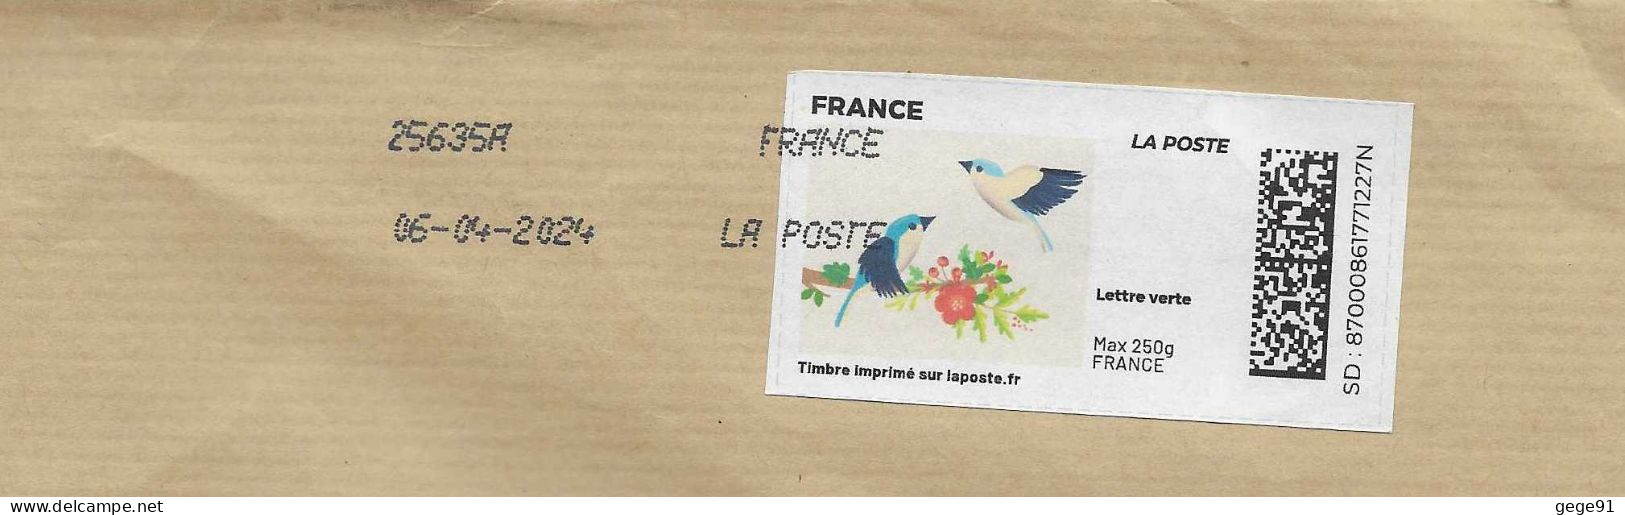 Montimbrenligne _ Affranchissement Par Internet - Oiseaux - Mésanges - Enveloppe Entière - Afdrukbare Postzegels (Montimbrenligne)